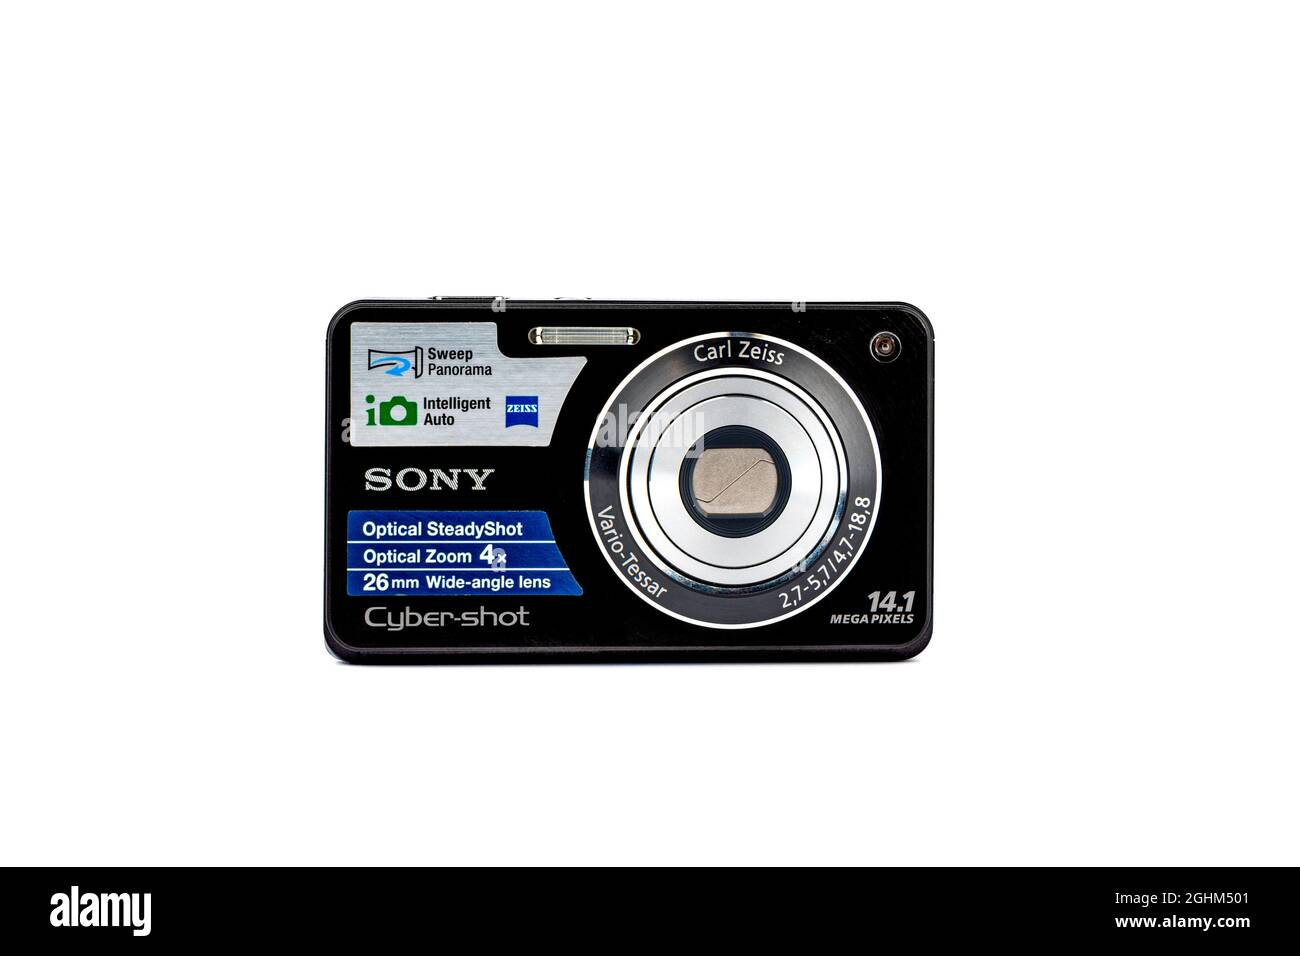 Moskau, Russland - 6. September 2021: Gebrauchte Digitalkamera Sony Cyber-shot DSC-W320 mit Carl Zeiss ® Objektiv auf weißem Hintergrund isoliert. Speicherplatz kopieren. Stockfoto